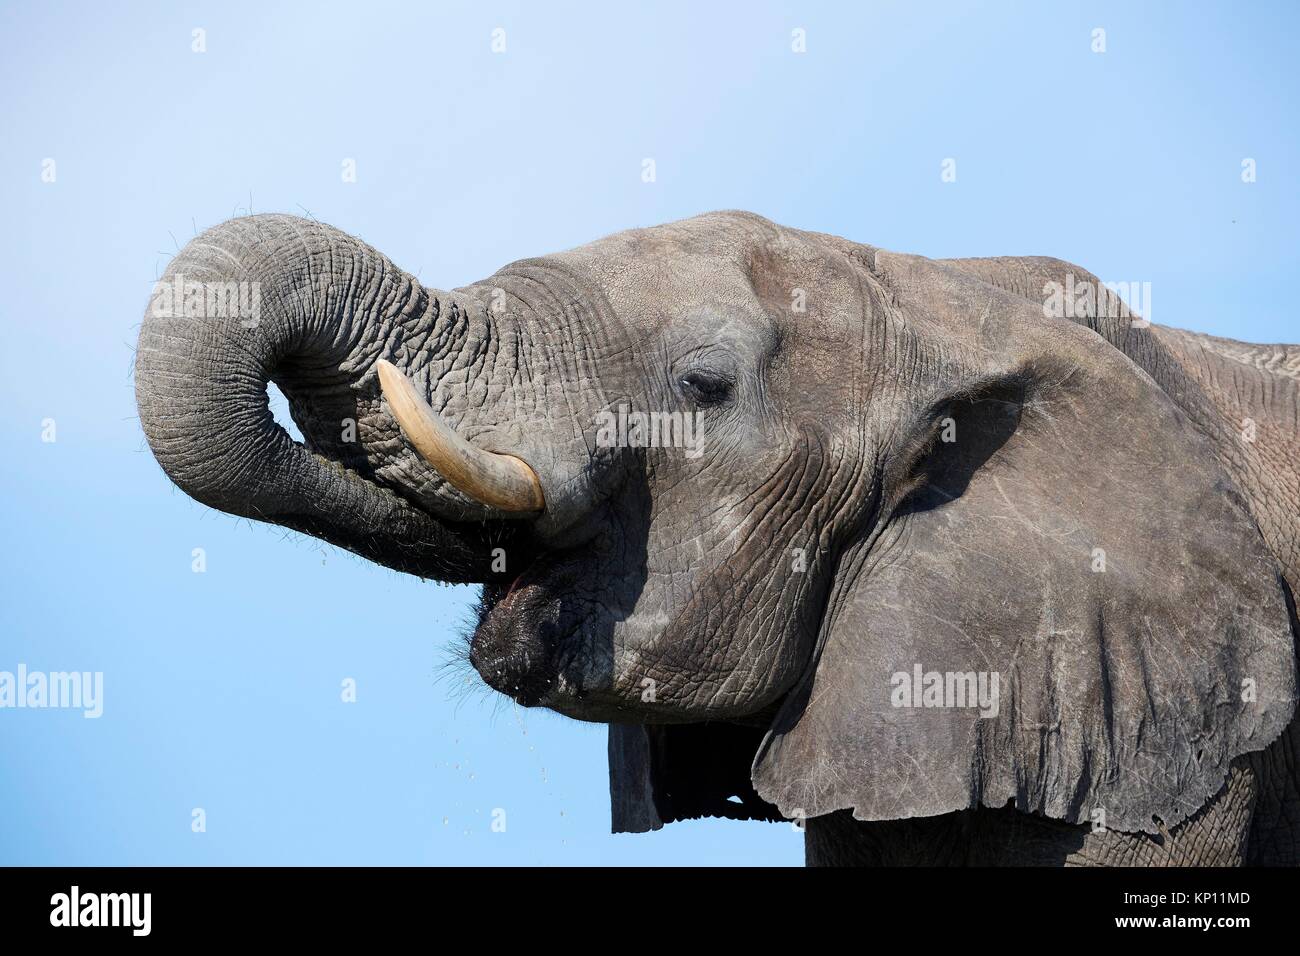 Retrato del elefante africano (Loxodonta africana), bebiendo en una watehole. El Parque Nacional de Hwange (Zimbabwe). Foto de stock